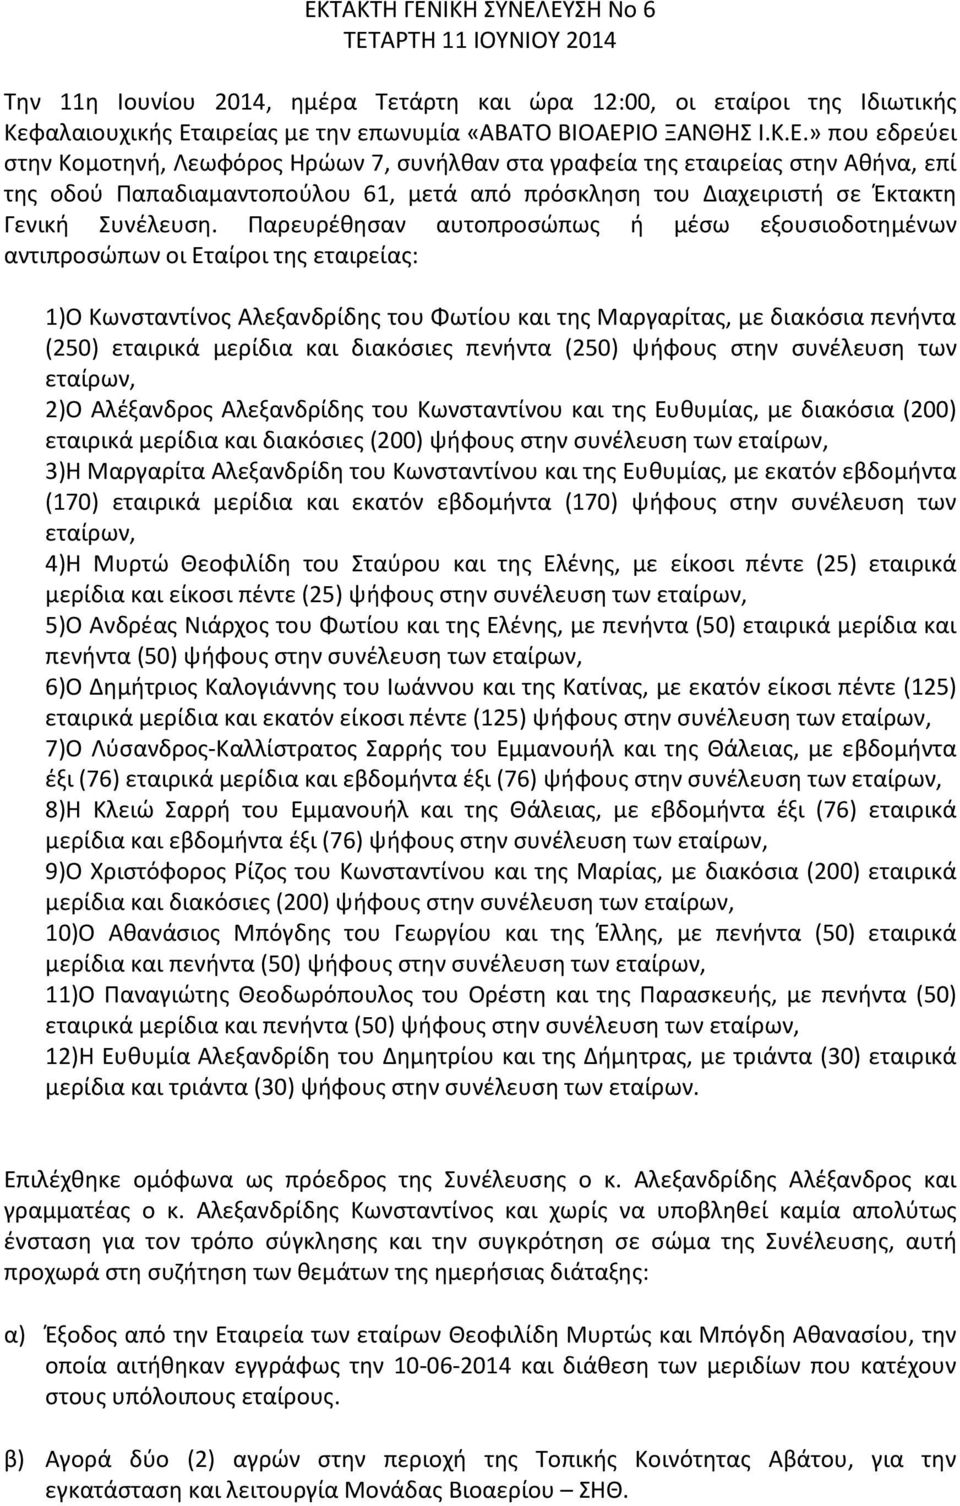 διακόσιες πενήντα (250) ψήφους στην συνέλευση των εταίρων, 2)Ο Αλέξανδρος Αλεξανδρίδης του Κωνσταντίνου και της Ευθυμίας, με διακόσια (200) εταιρικά μερίδια και διακόσιες (200) ψήφους στην συνέλευση